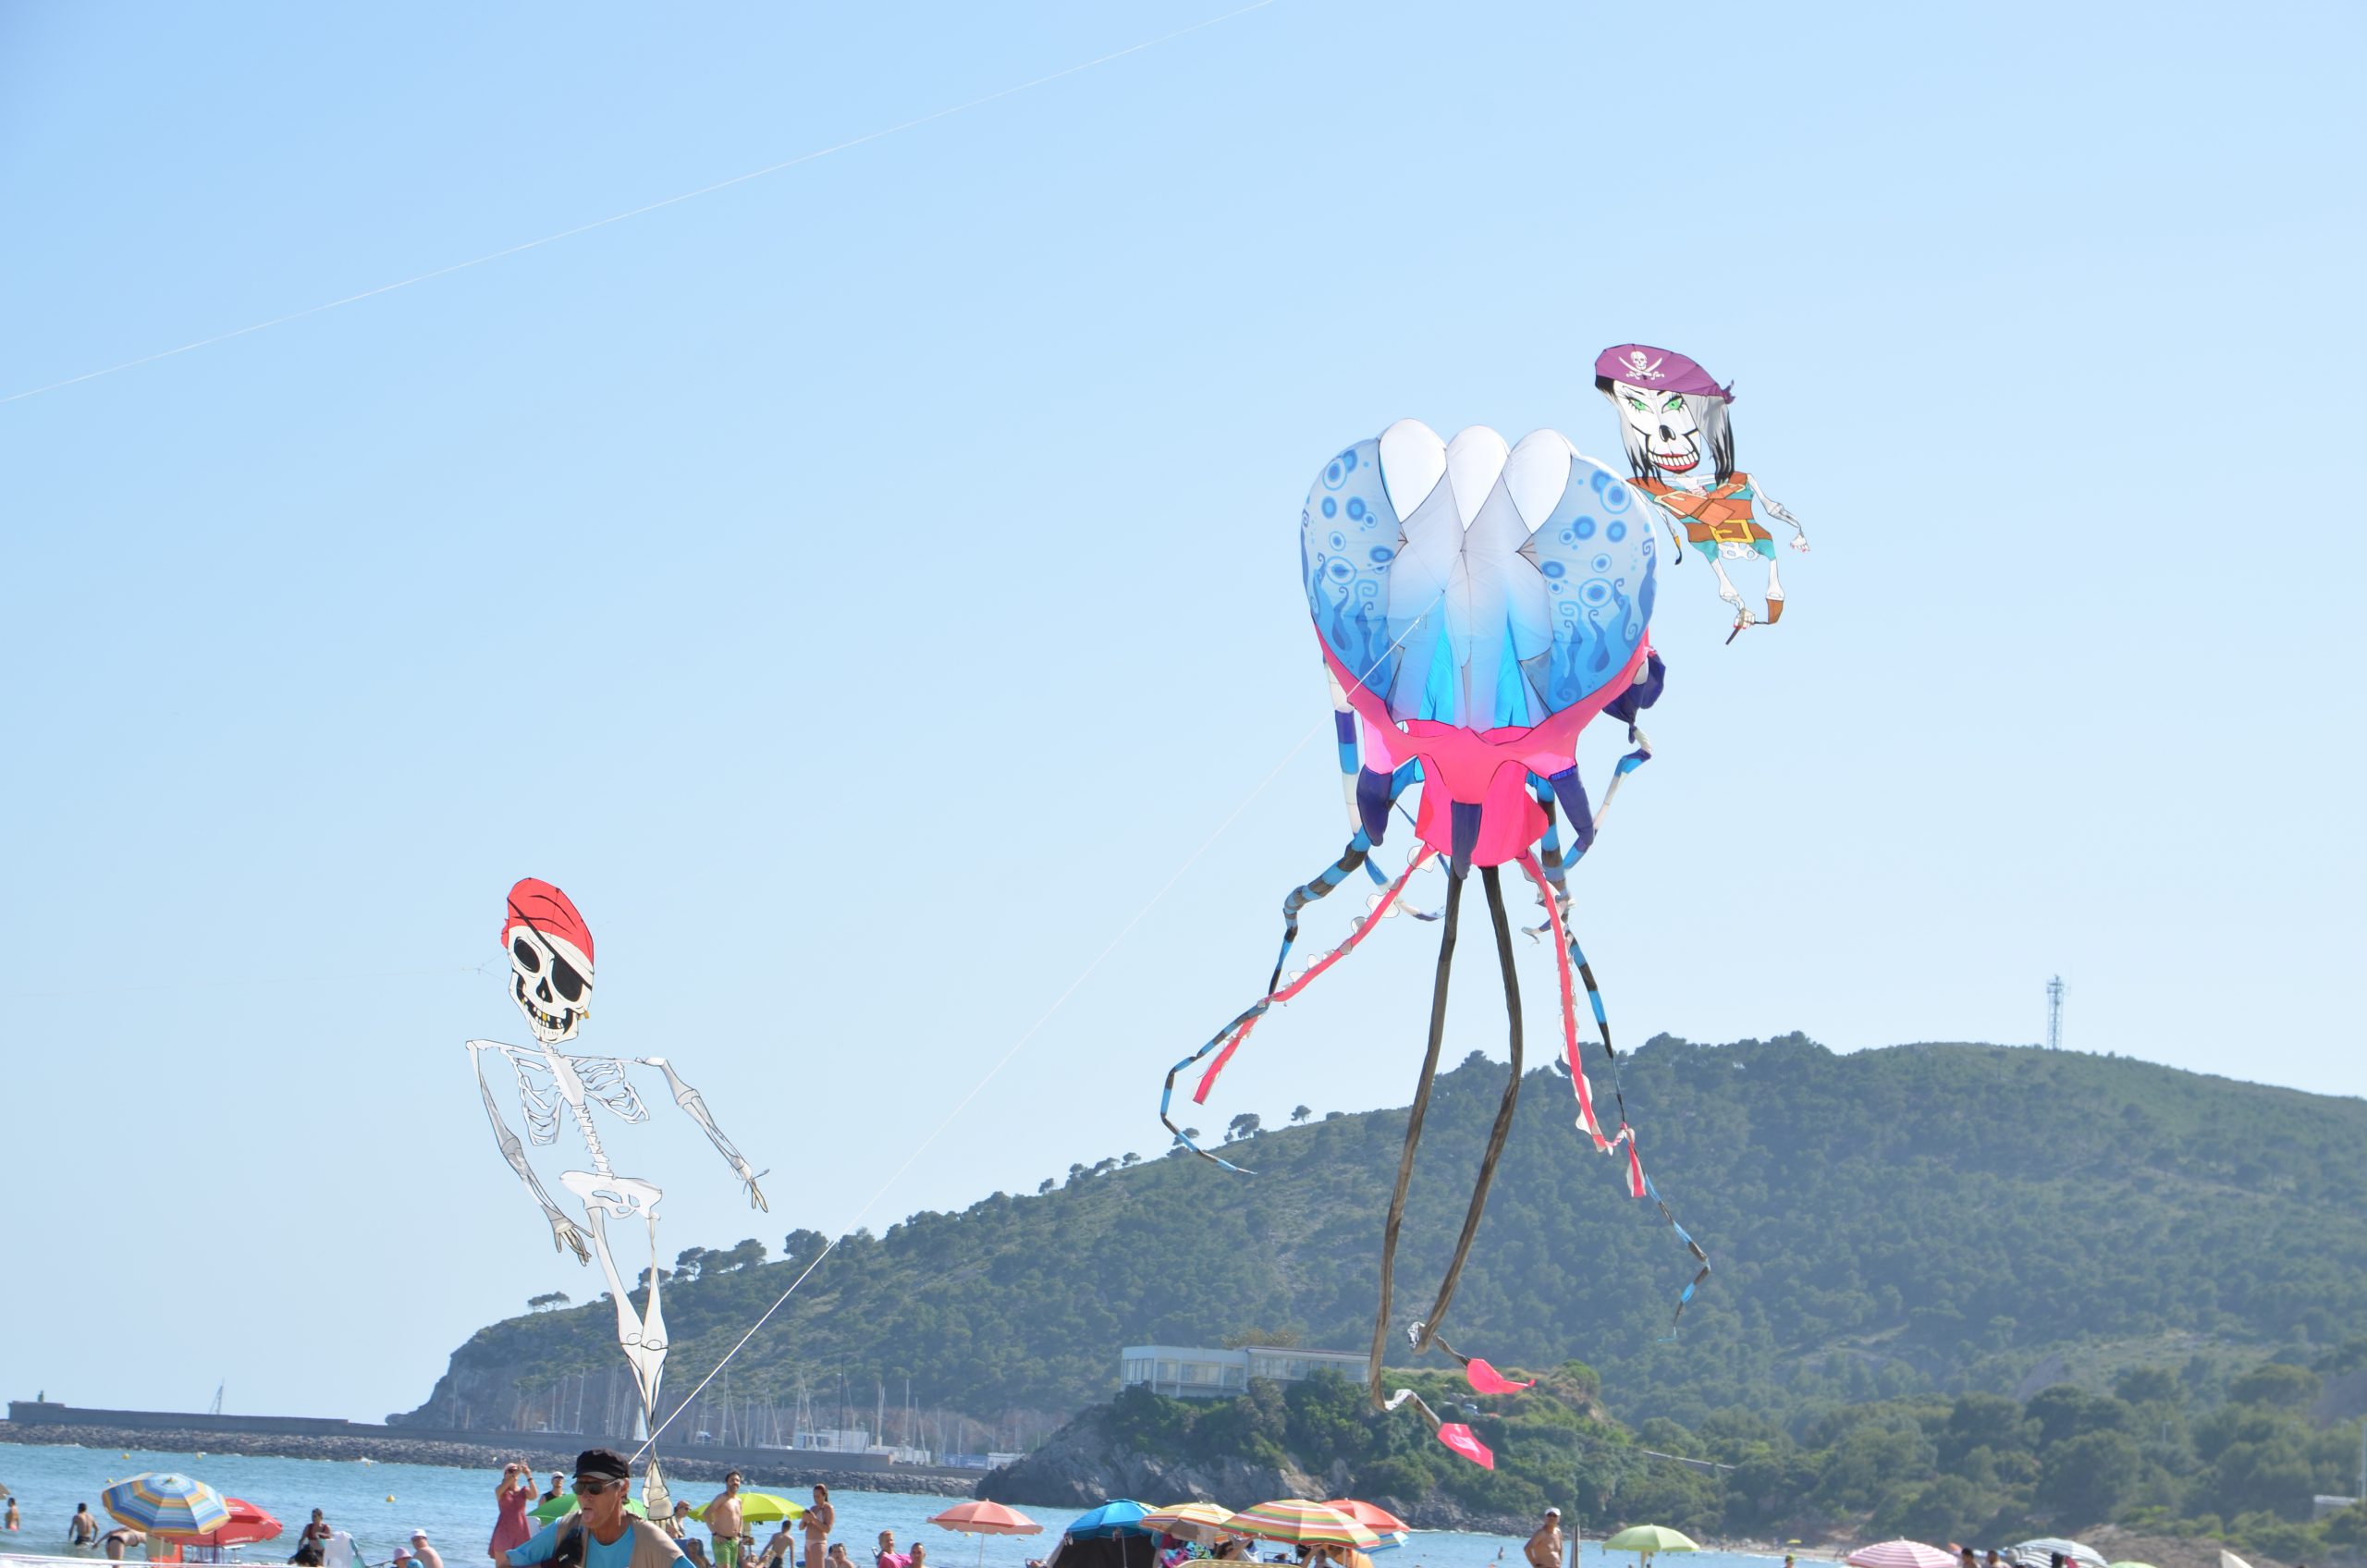 El Festival de Cometas llena el cielo de Oropesa del Mar de acrobacias y mucho color